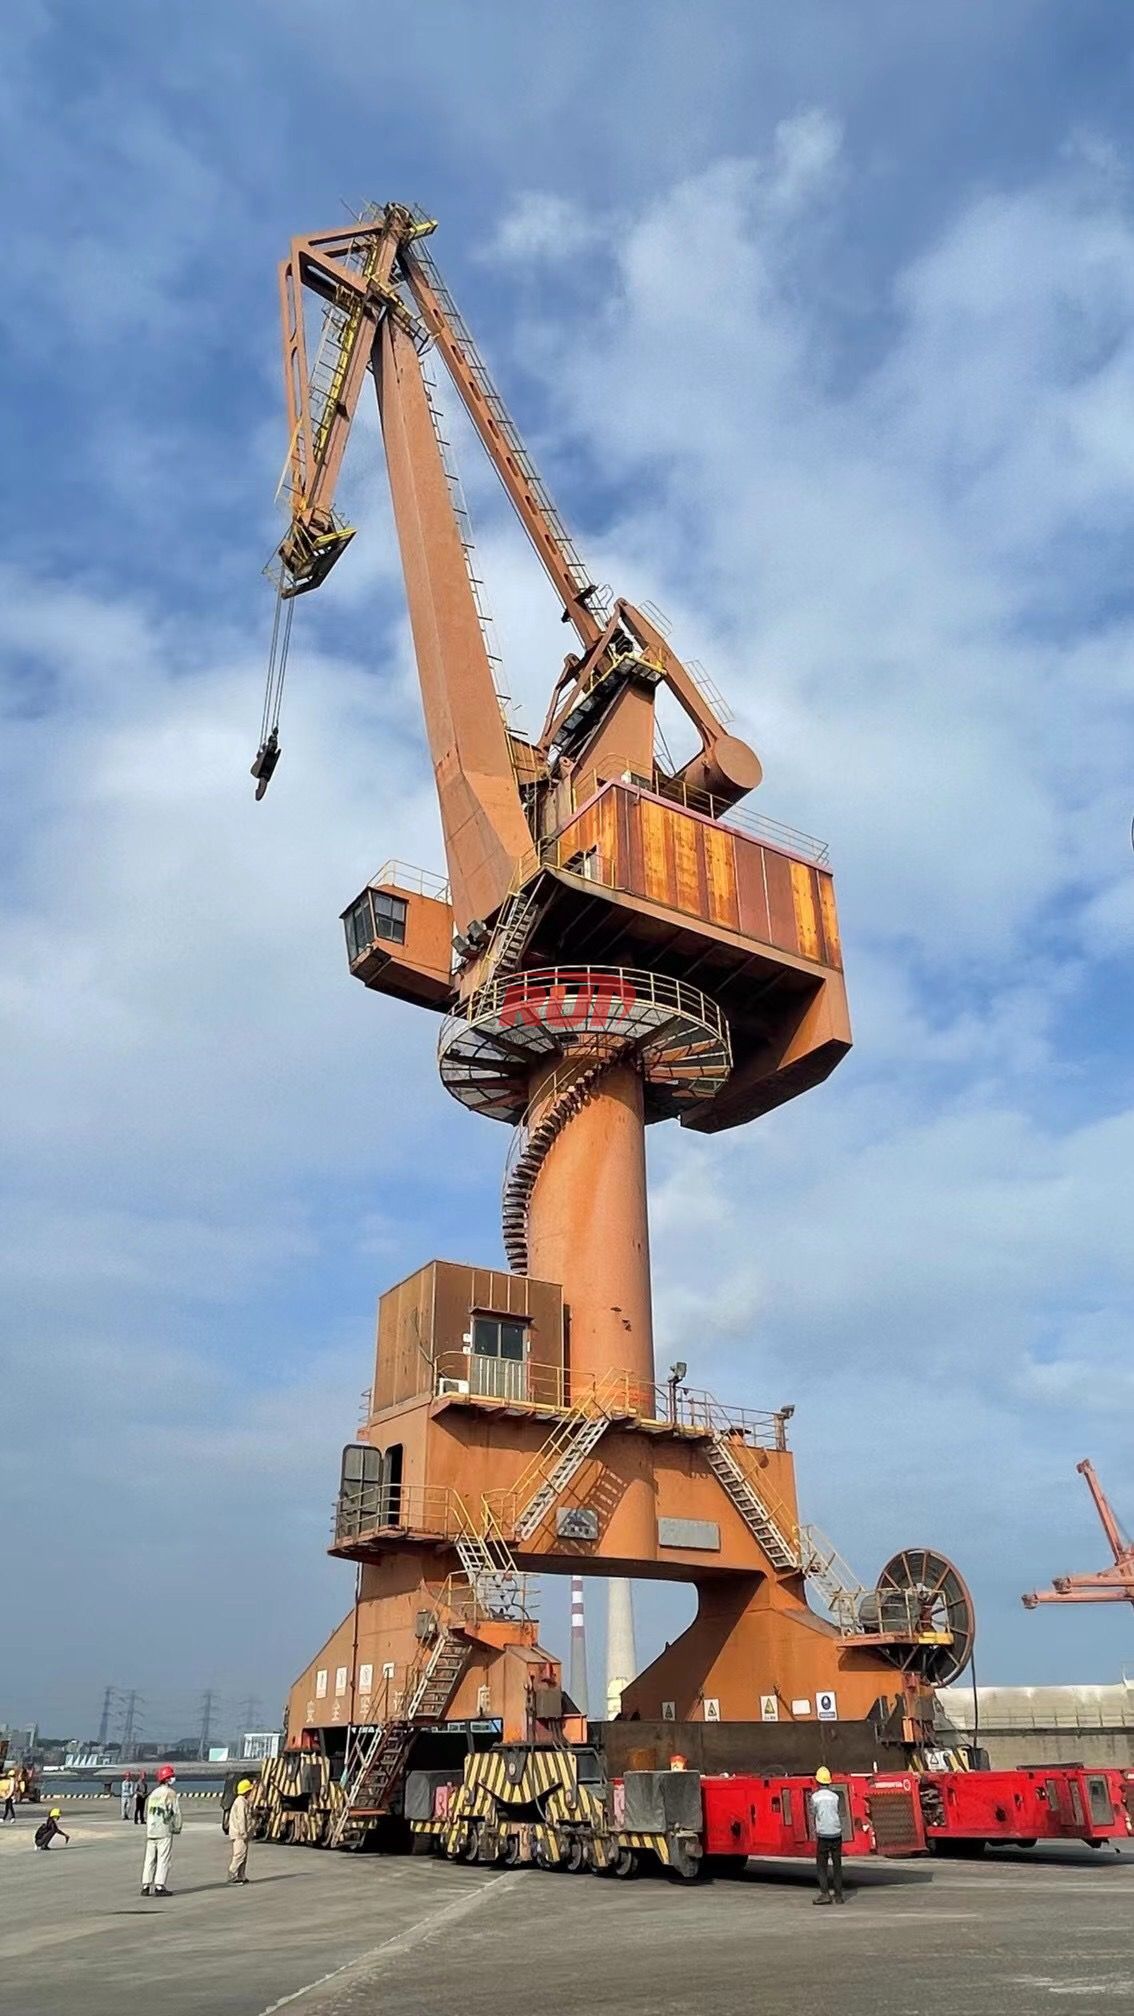 relocated port crane move by SPMT